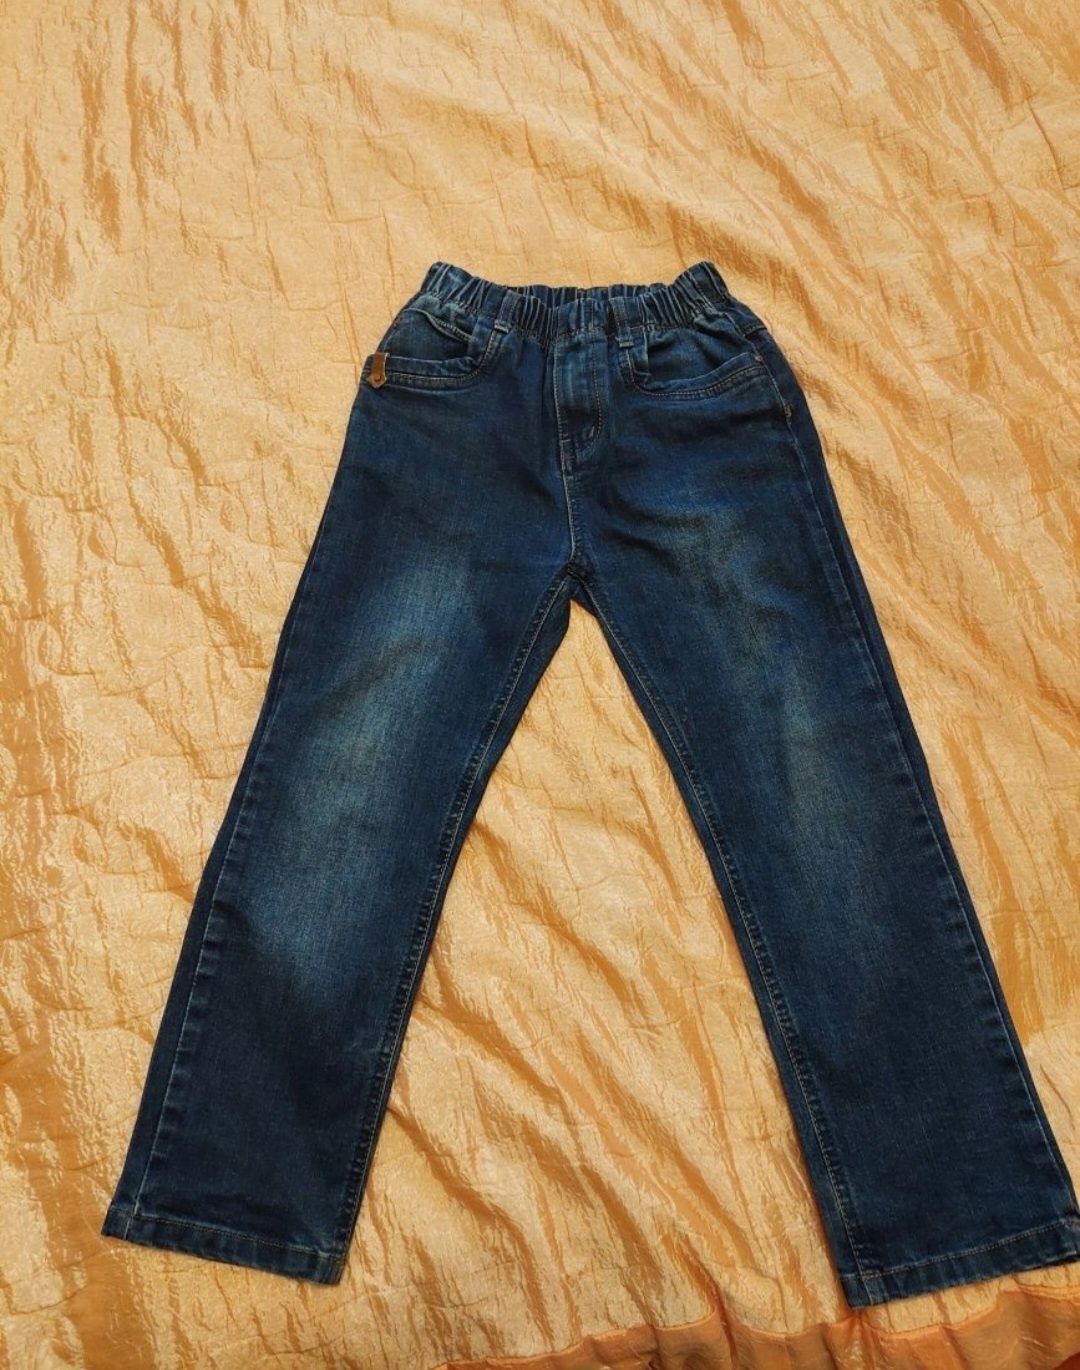 Продам джинсы для мальчика на рост 134